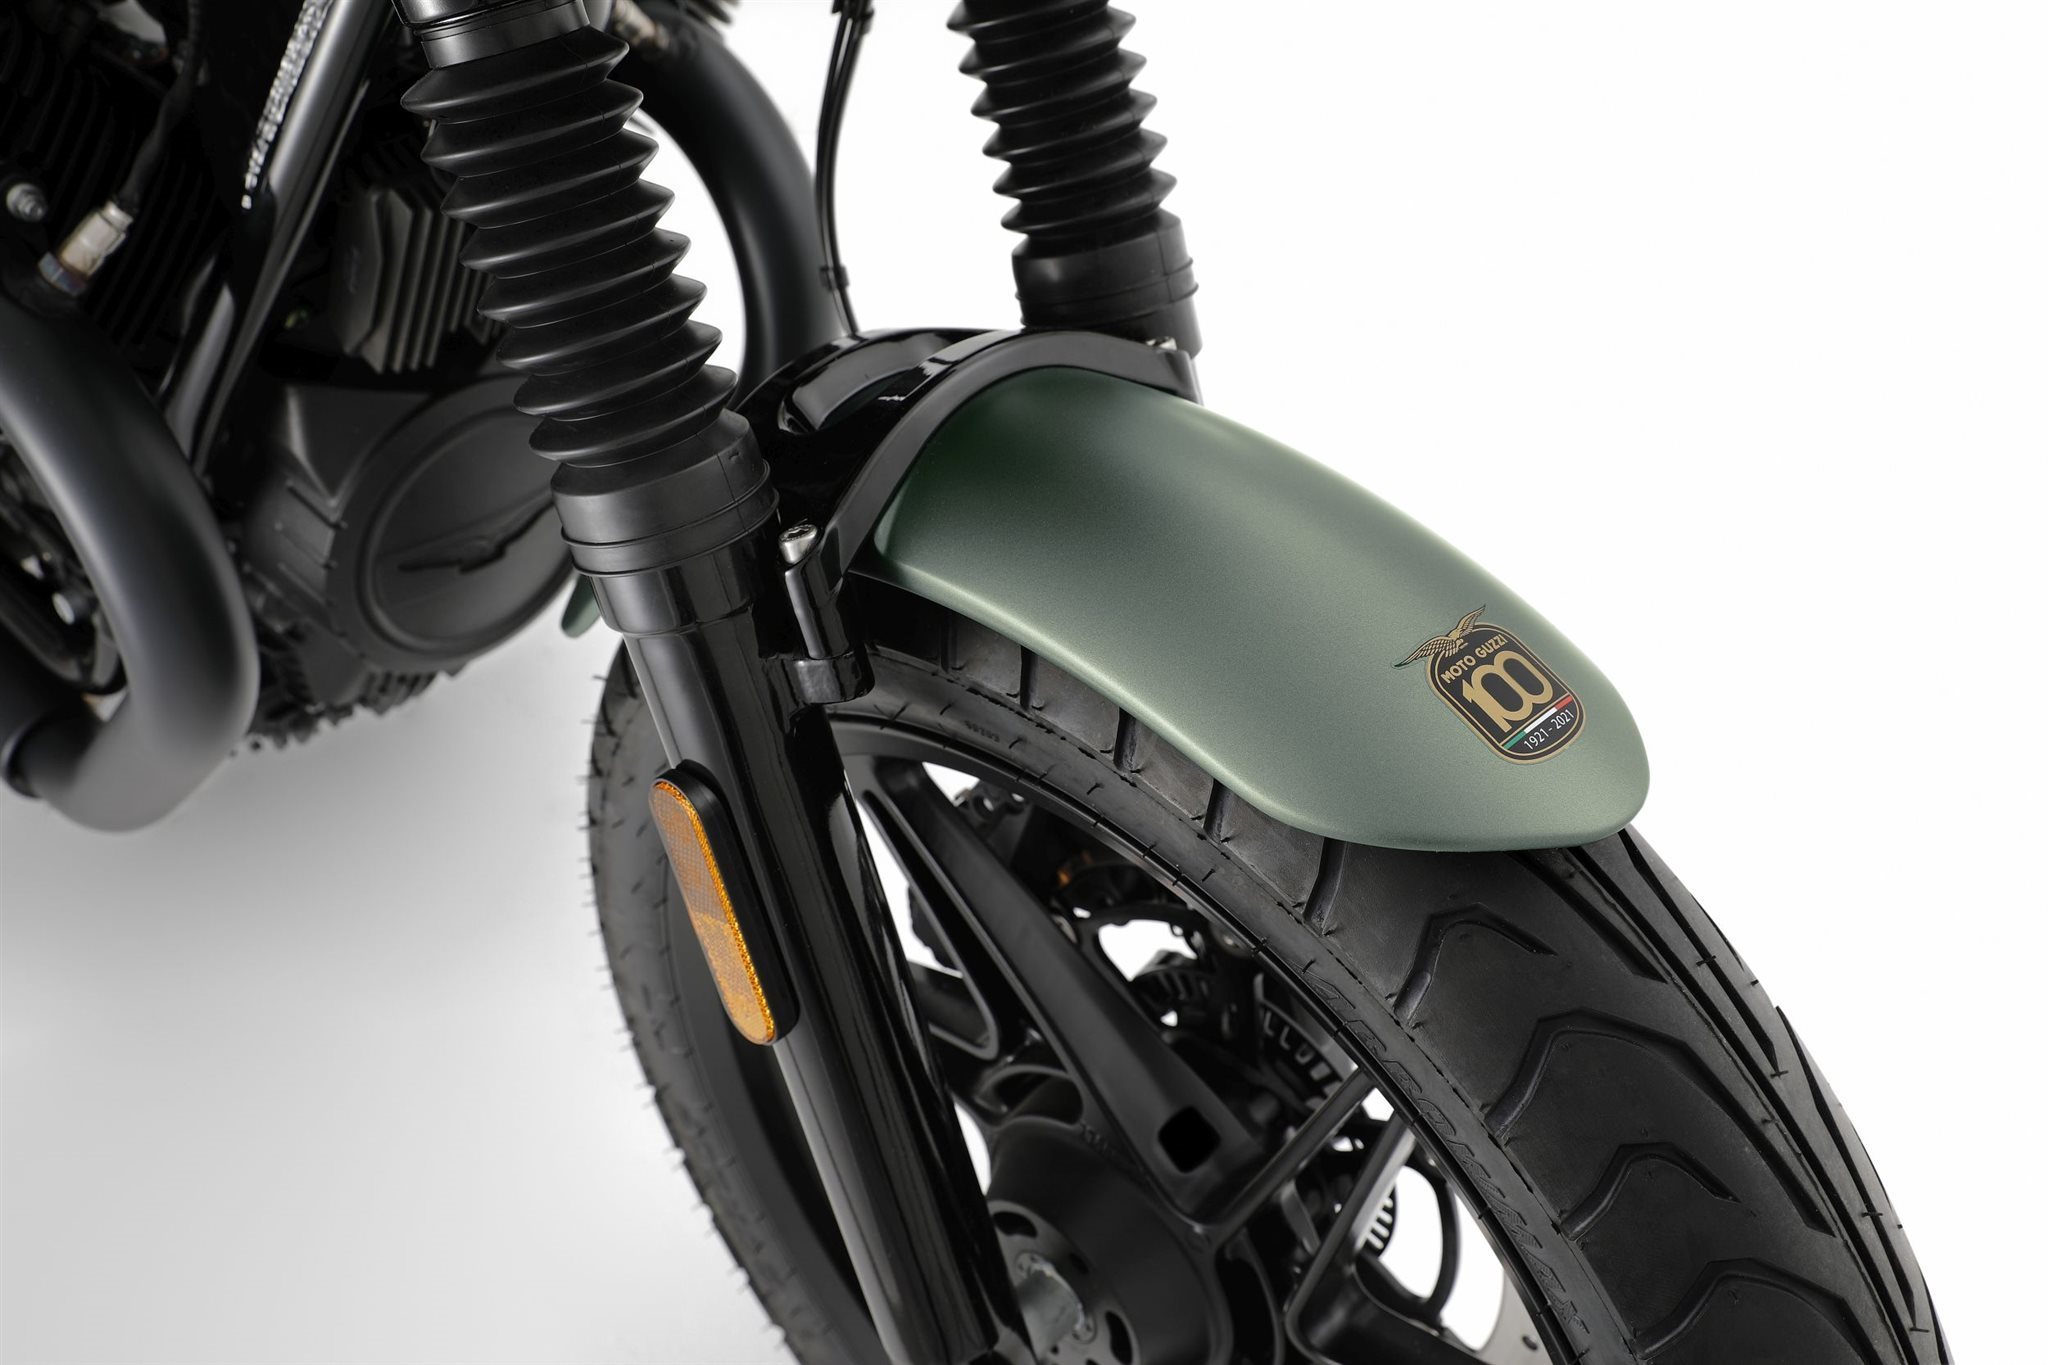 Moto Guzzi V9 Bobber Special Edition